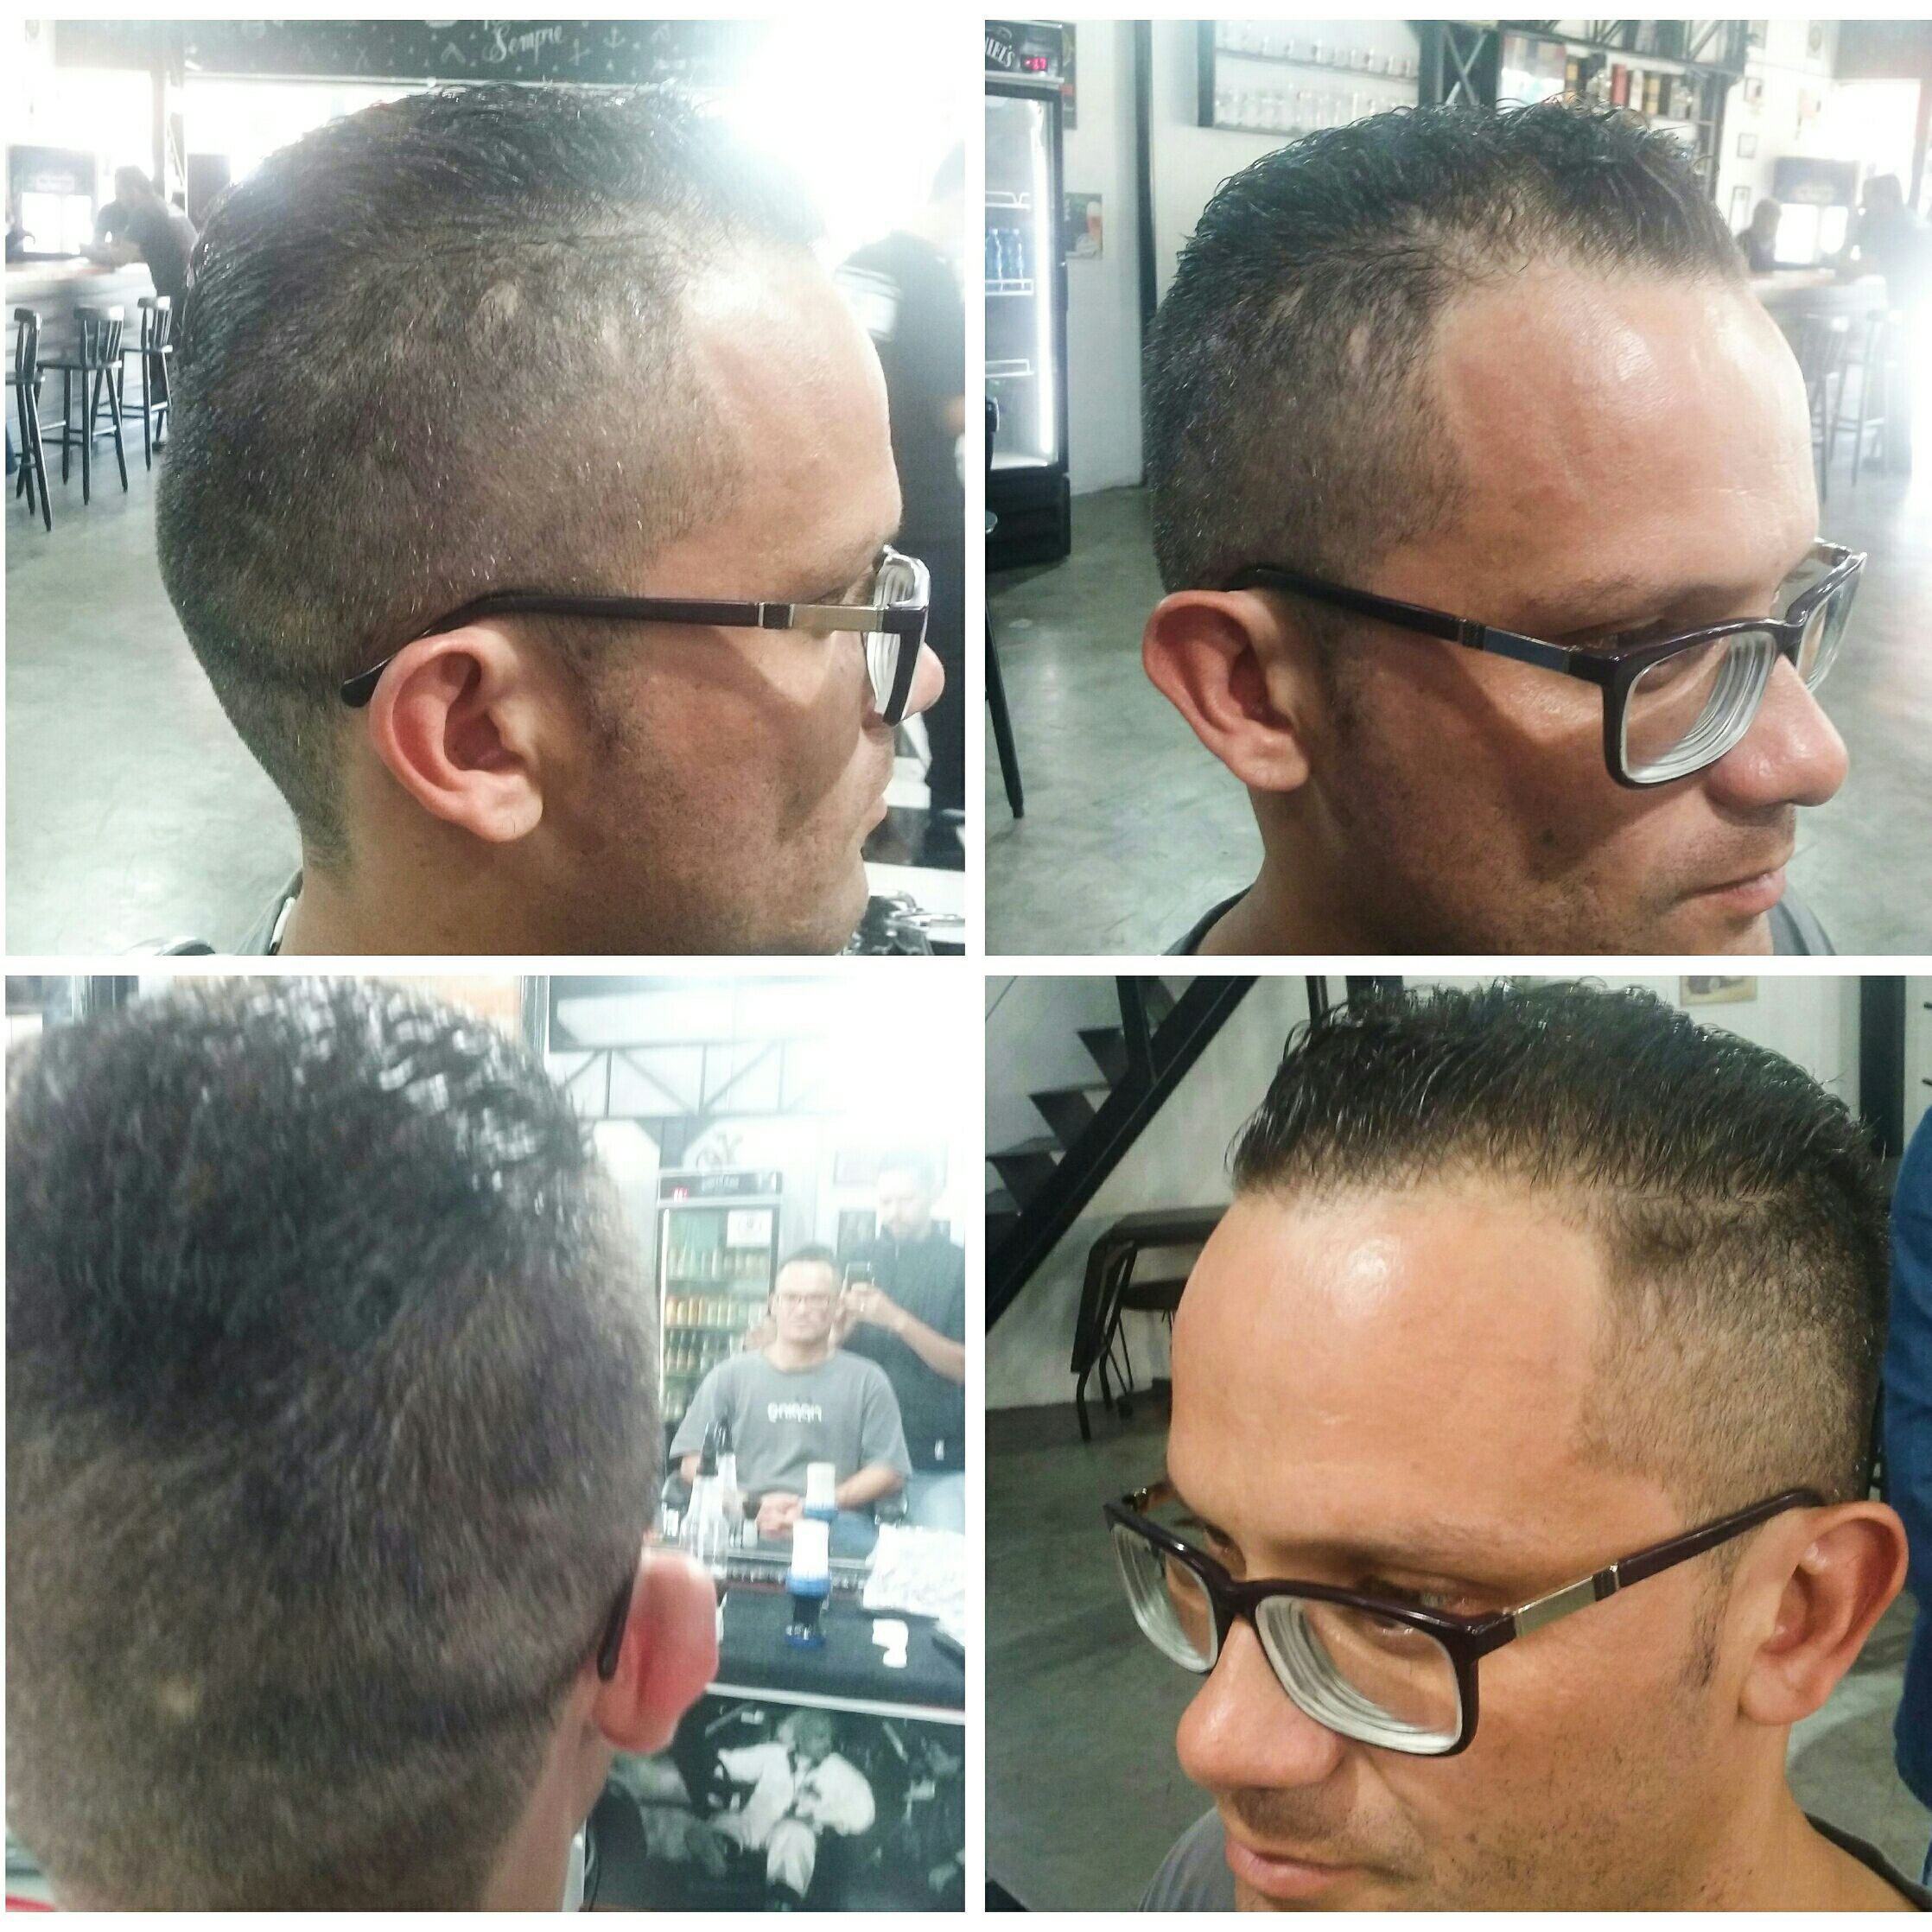 Importância do corte de cabelo profissional para a estética masculina -  Barbearia M51 - Barbearia em Tatuapé